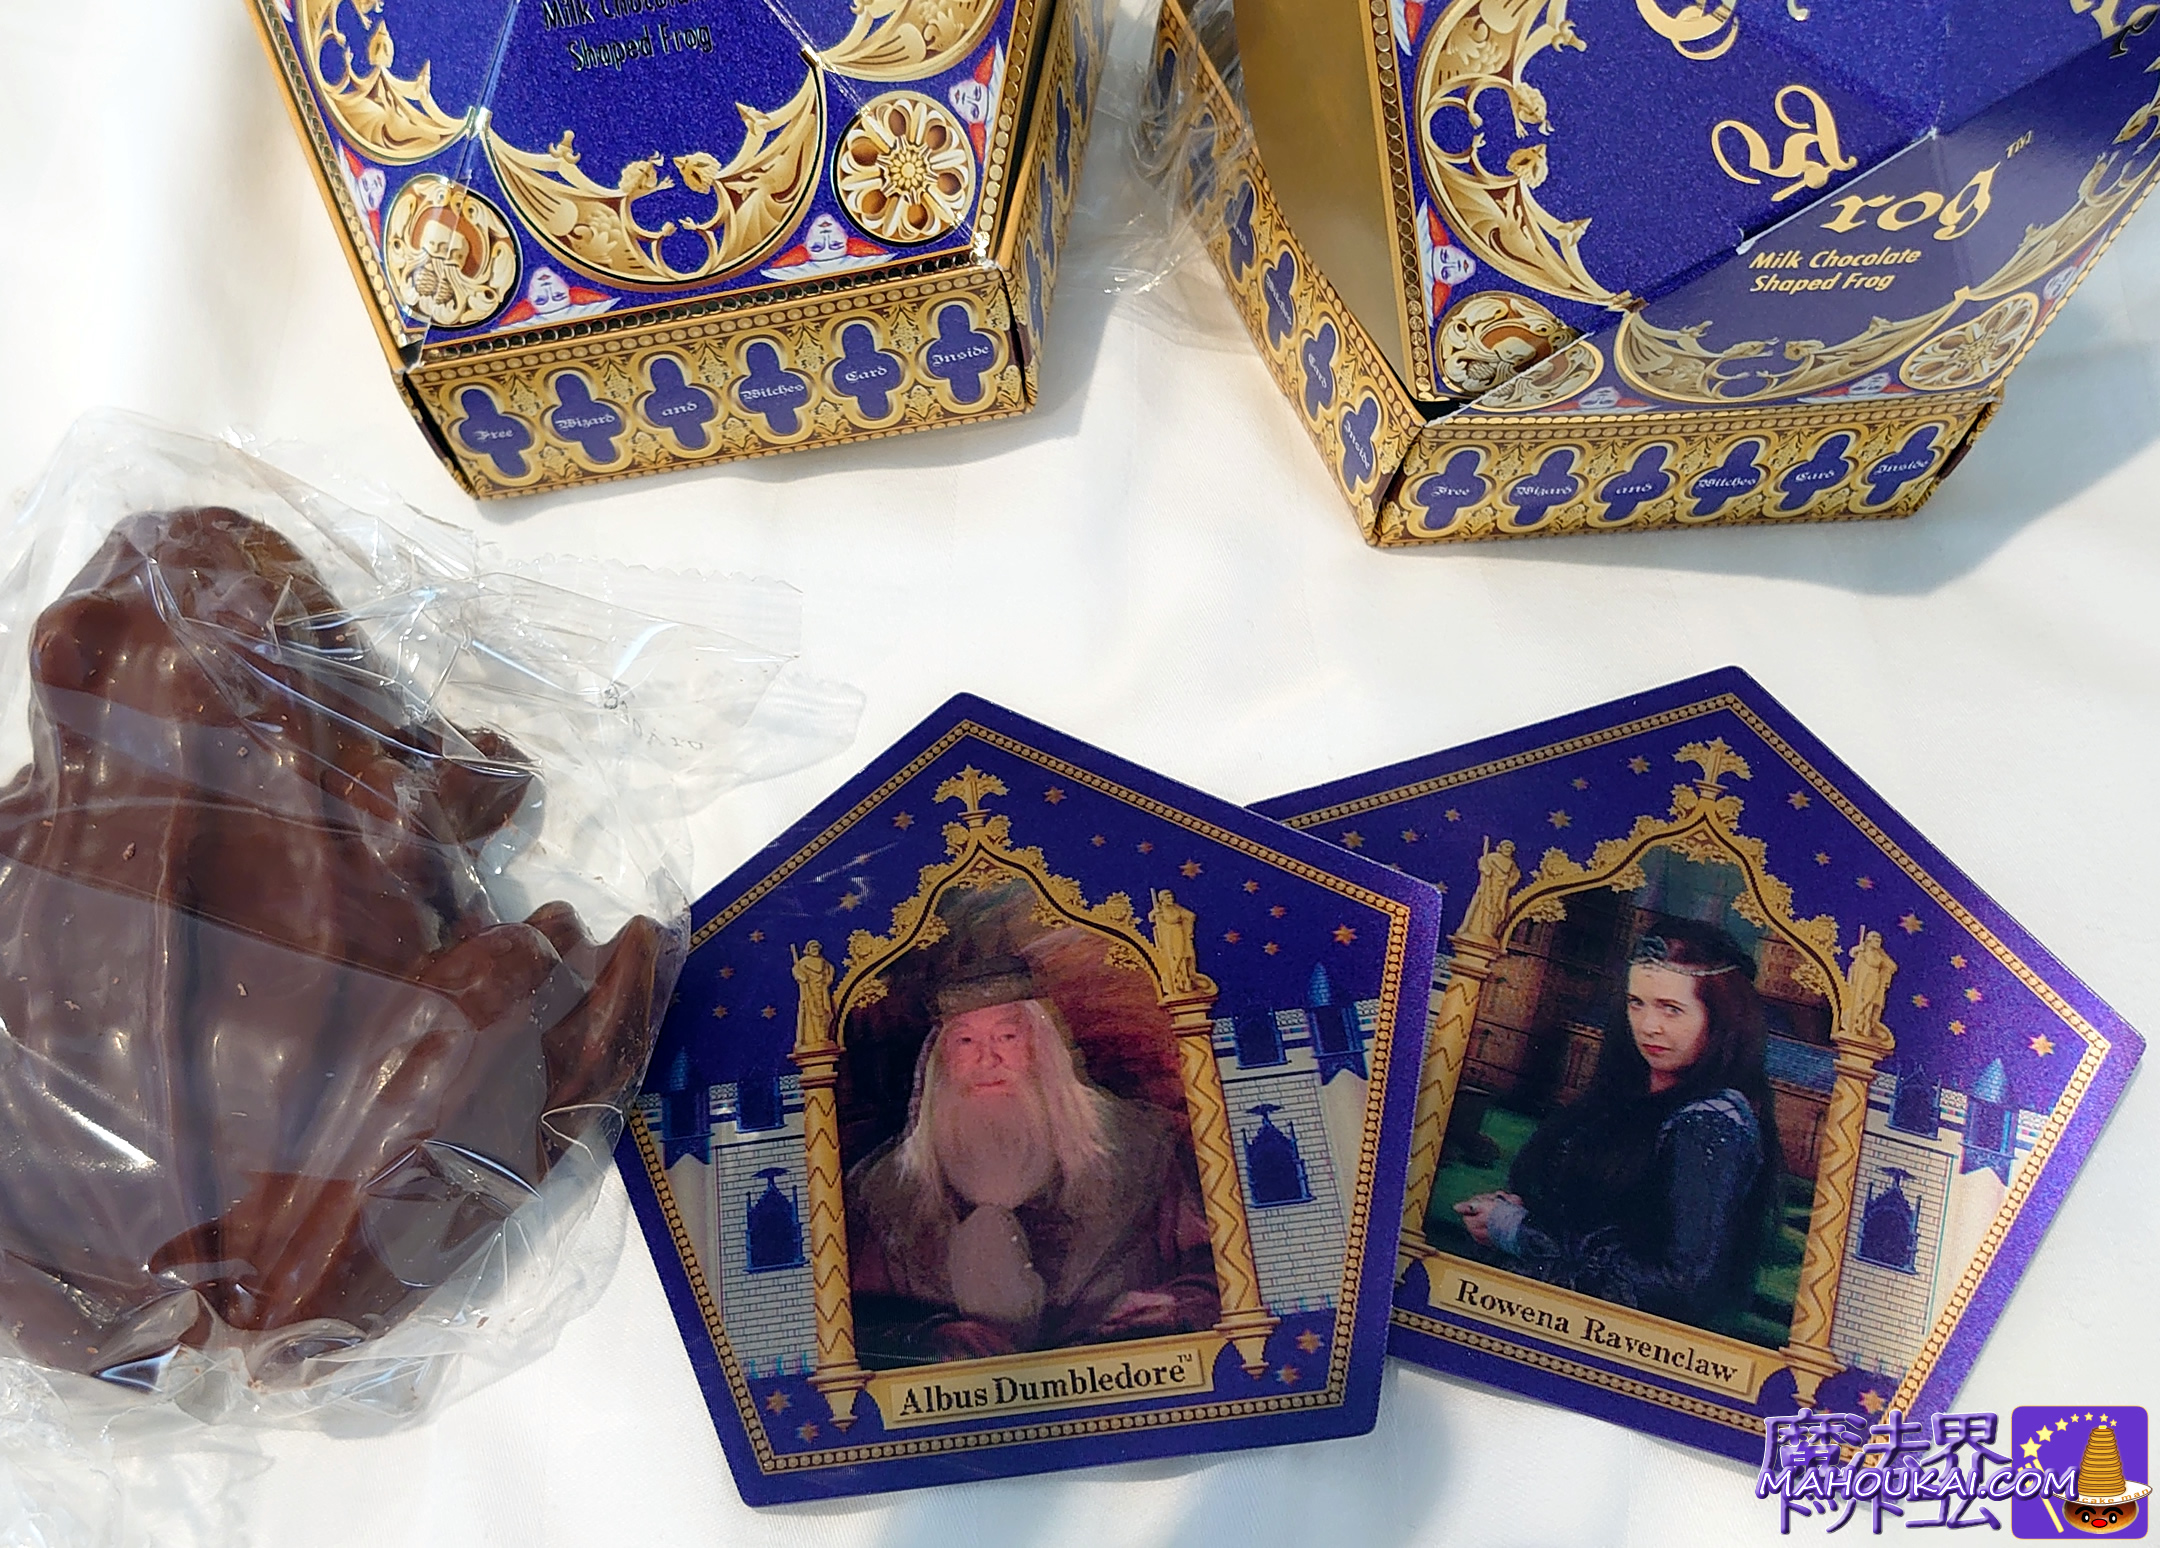 Frogs Chocolate cards USJ 'Harry Potter Area'